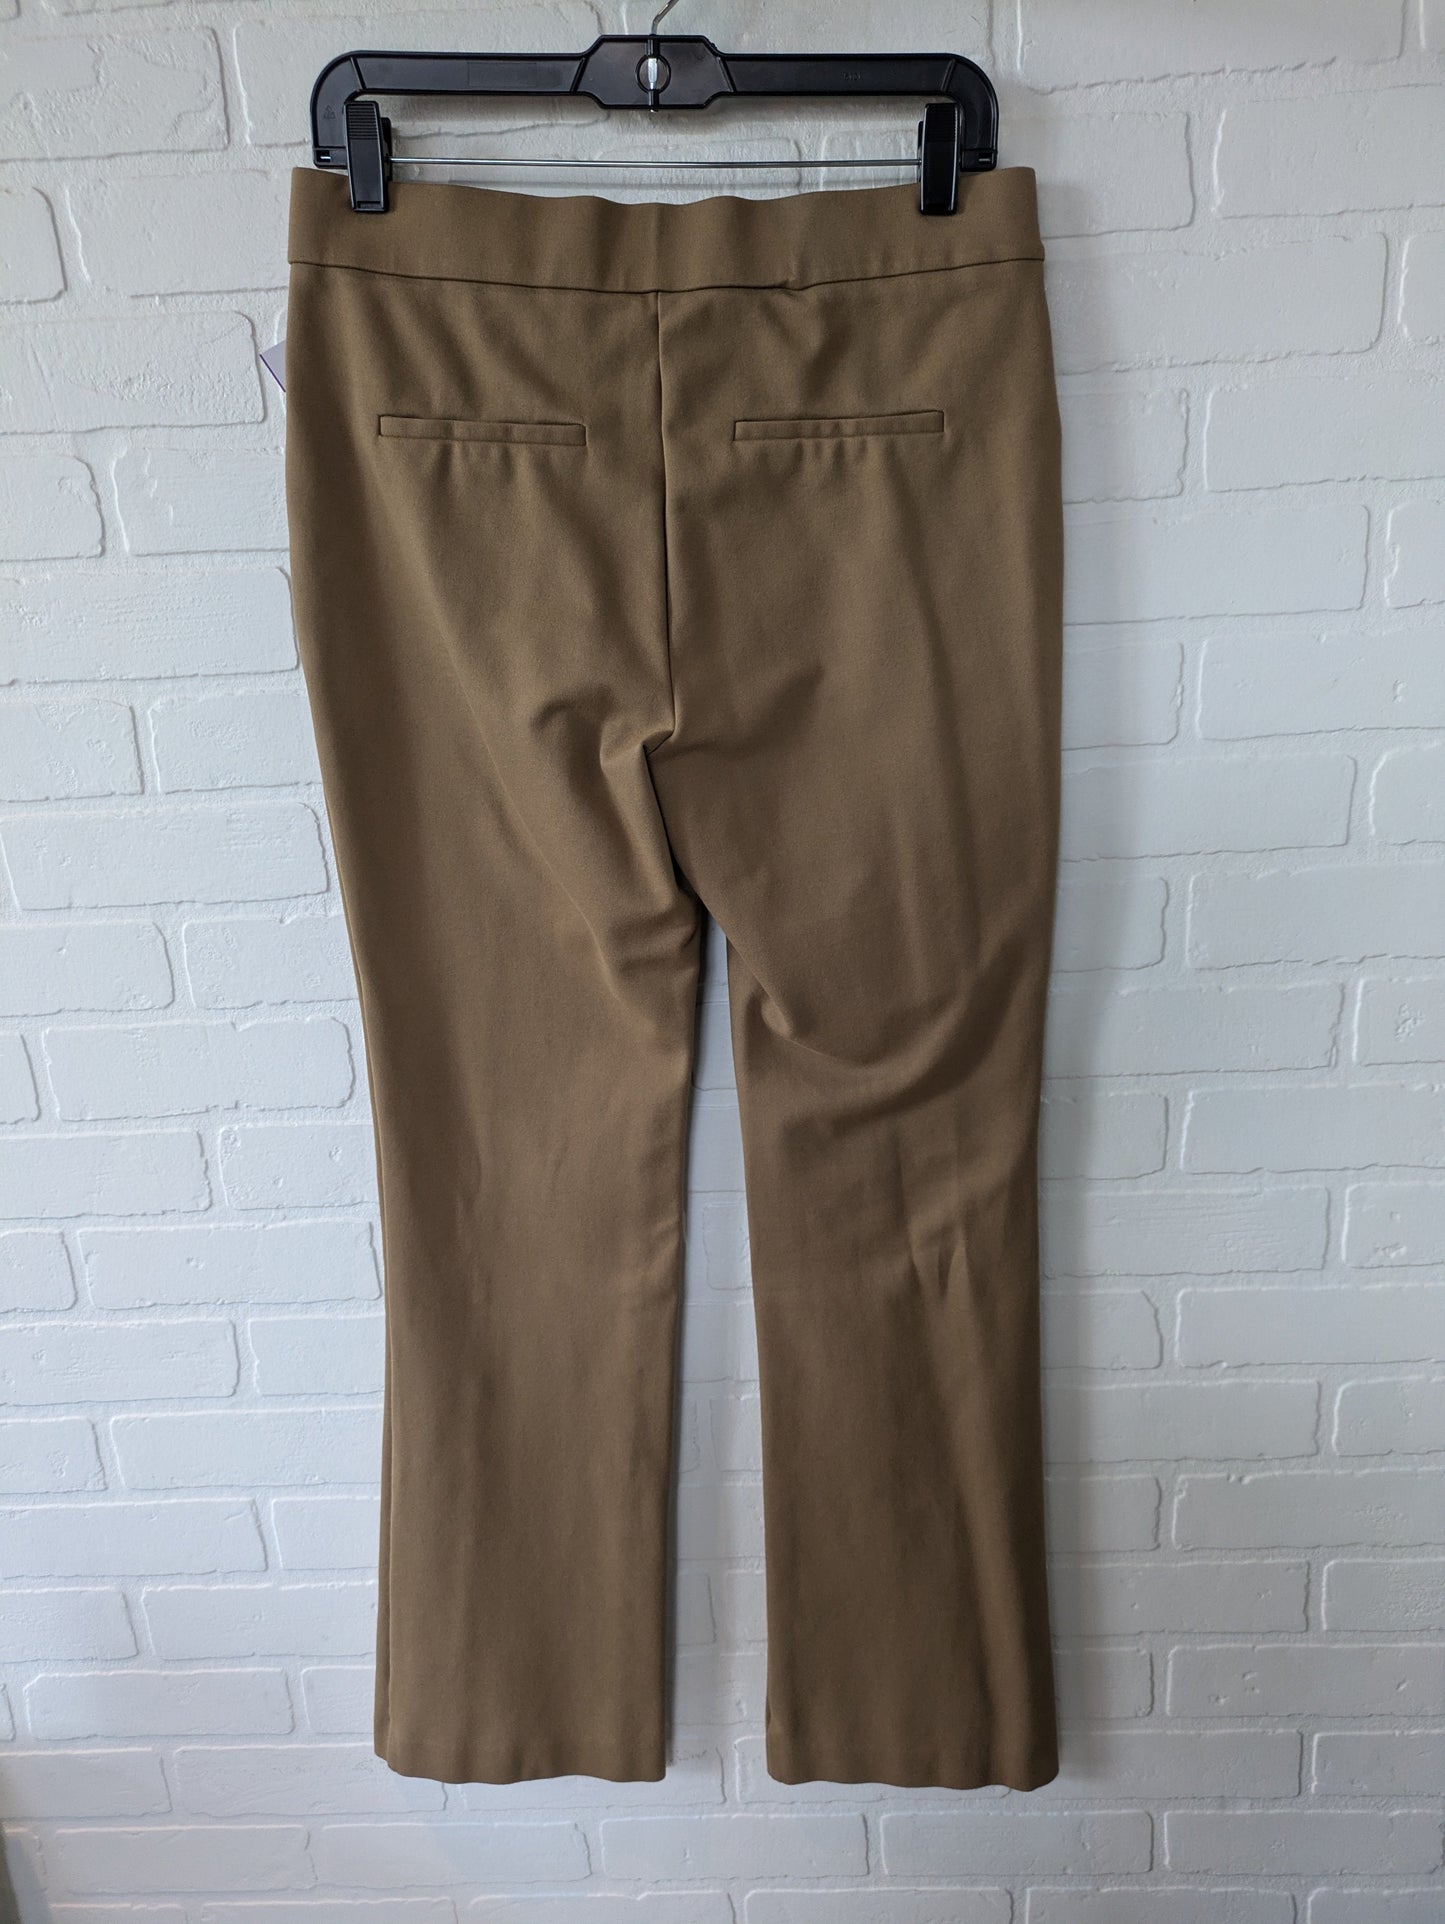 Brown Pants Dress Rafaella, Size 8